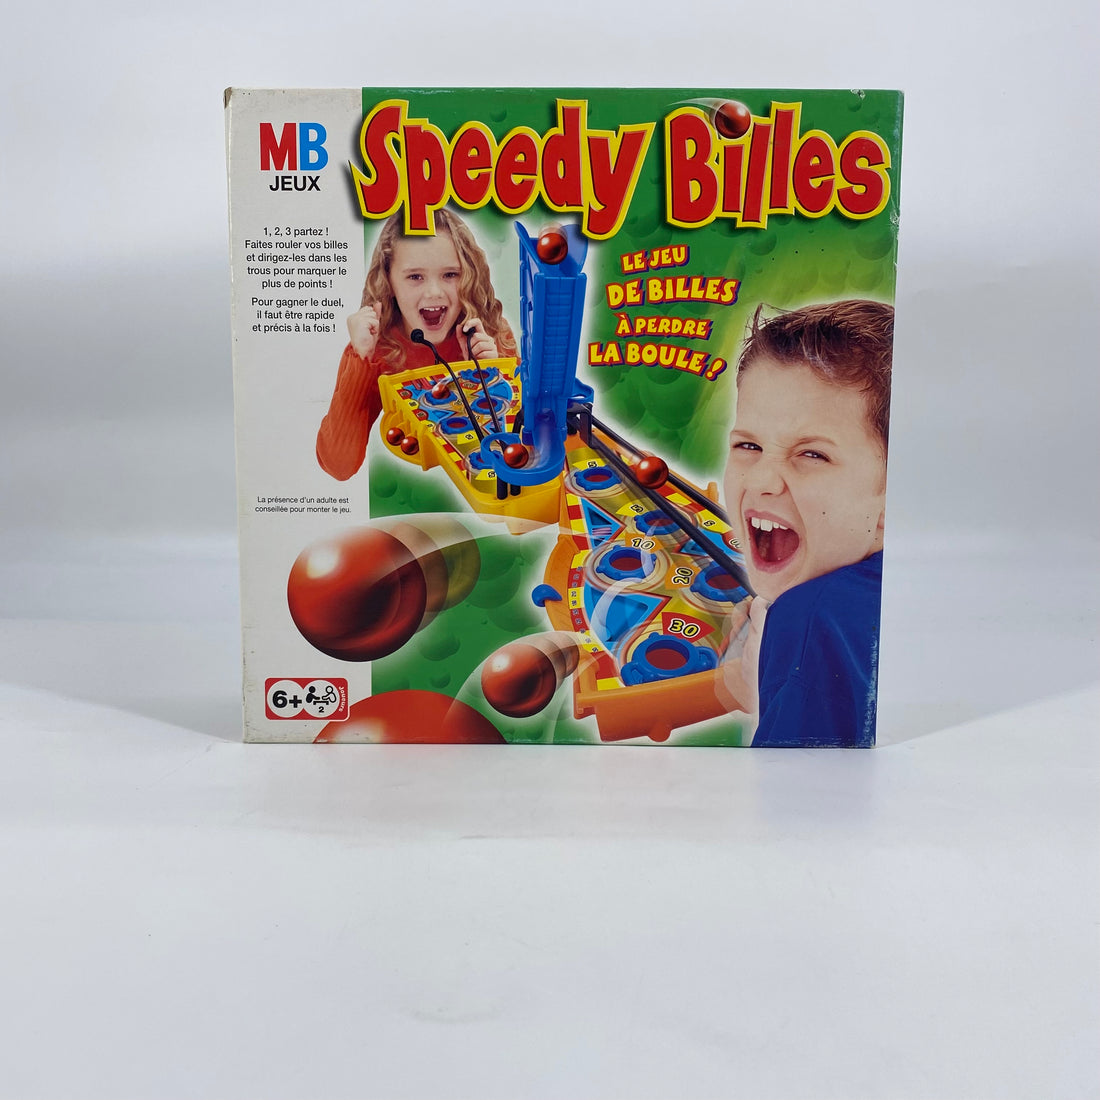 Speedy billes - Le jeu de billes à perdre la boule !